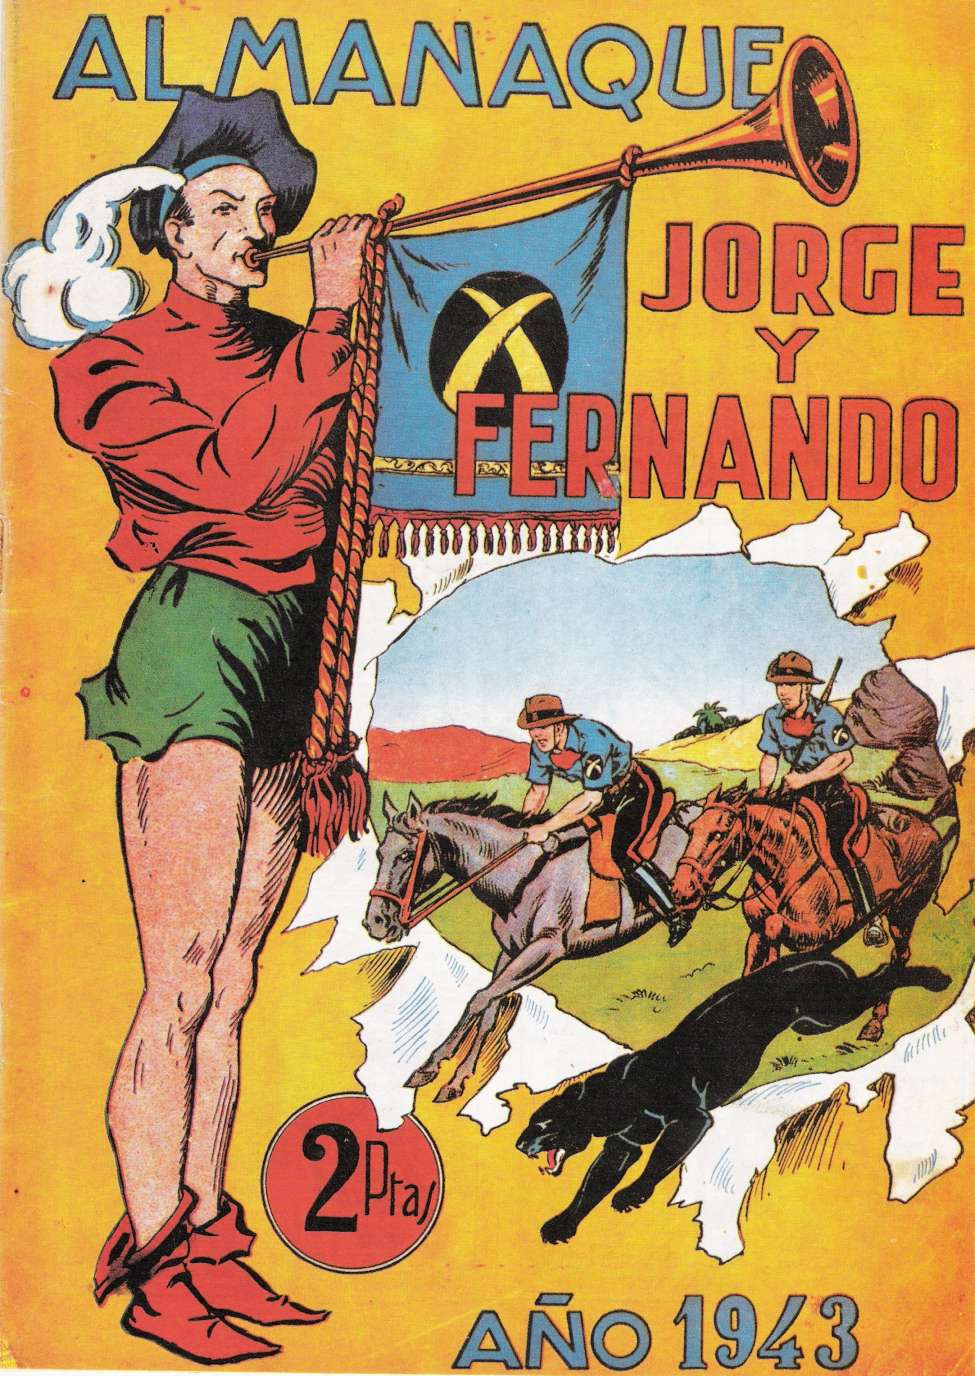 Book Cover For Jorge y Fernando Almanaque 1943